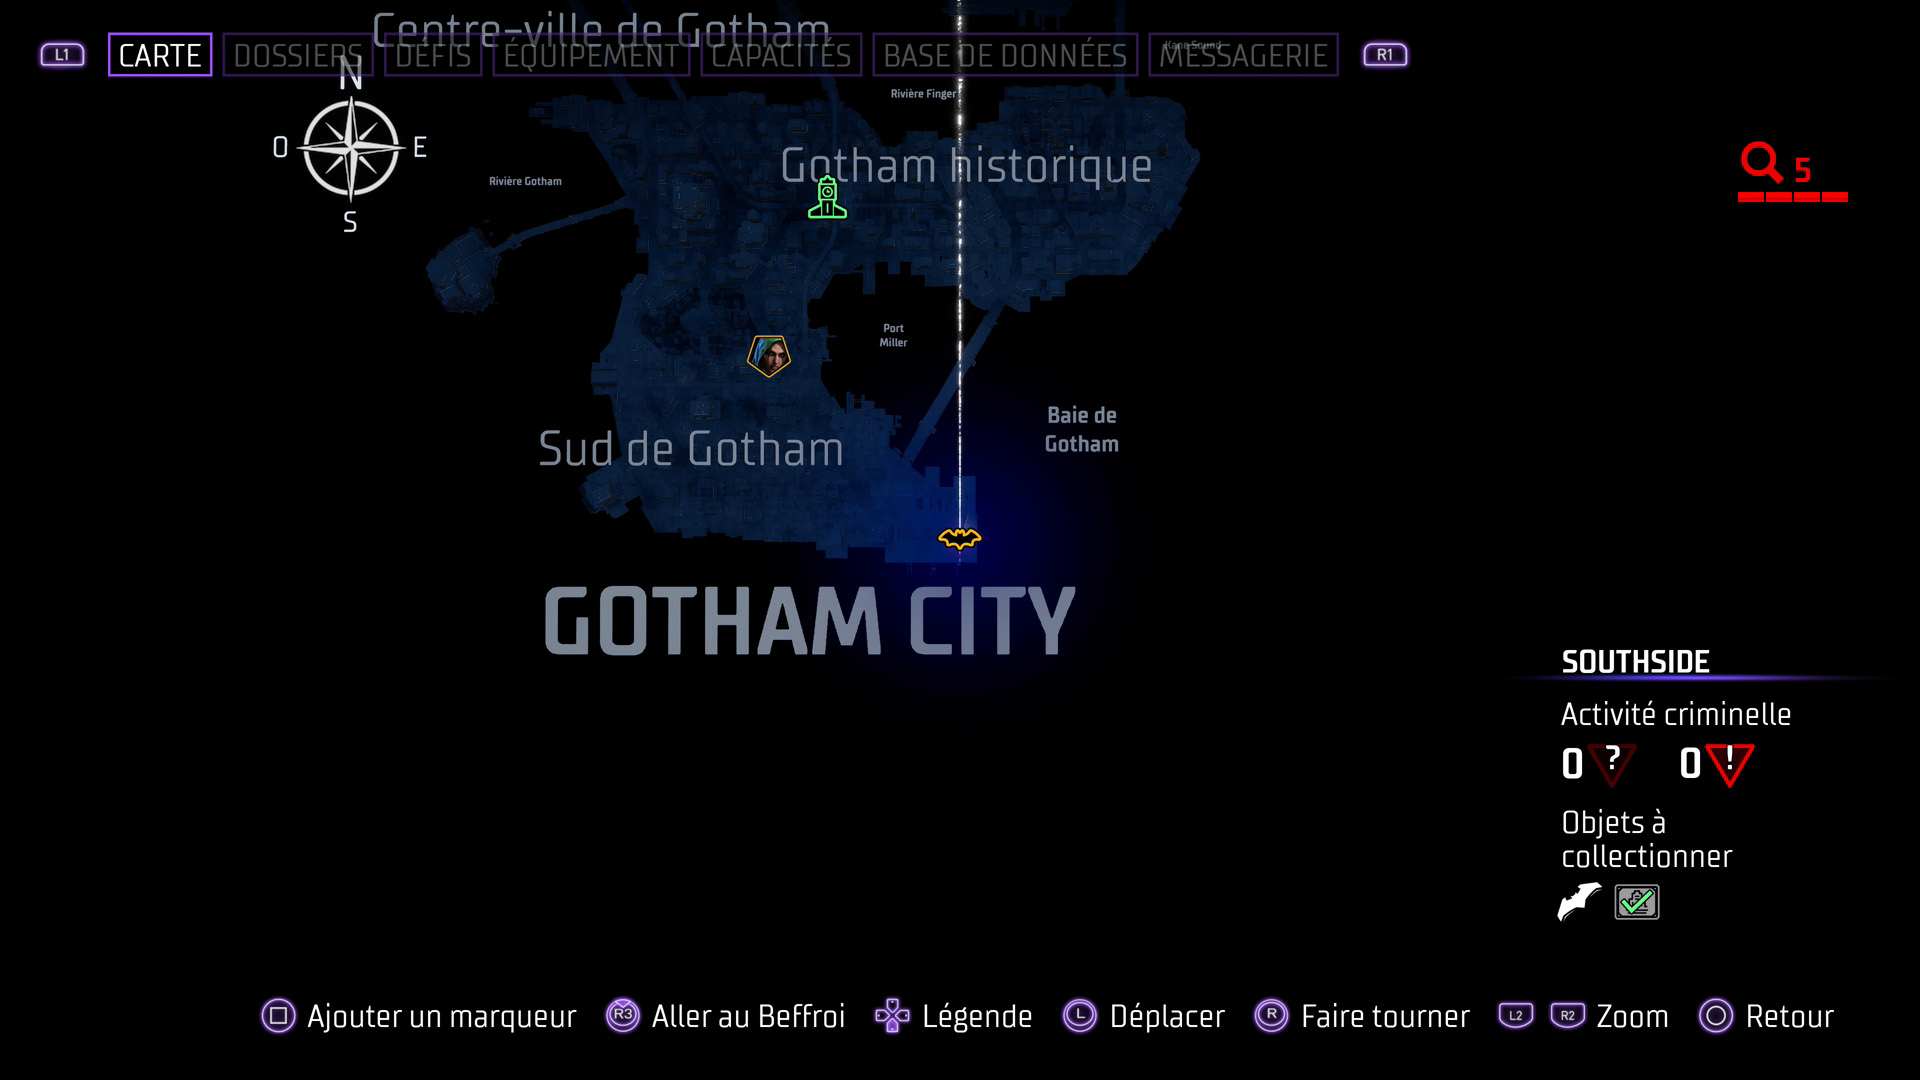 Les batarangs - sud de gotham - southside - quai dixon - gotham knights